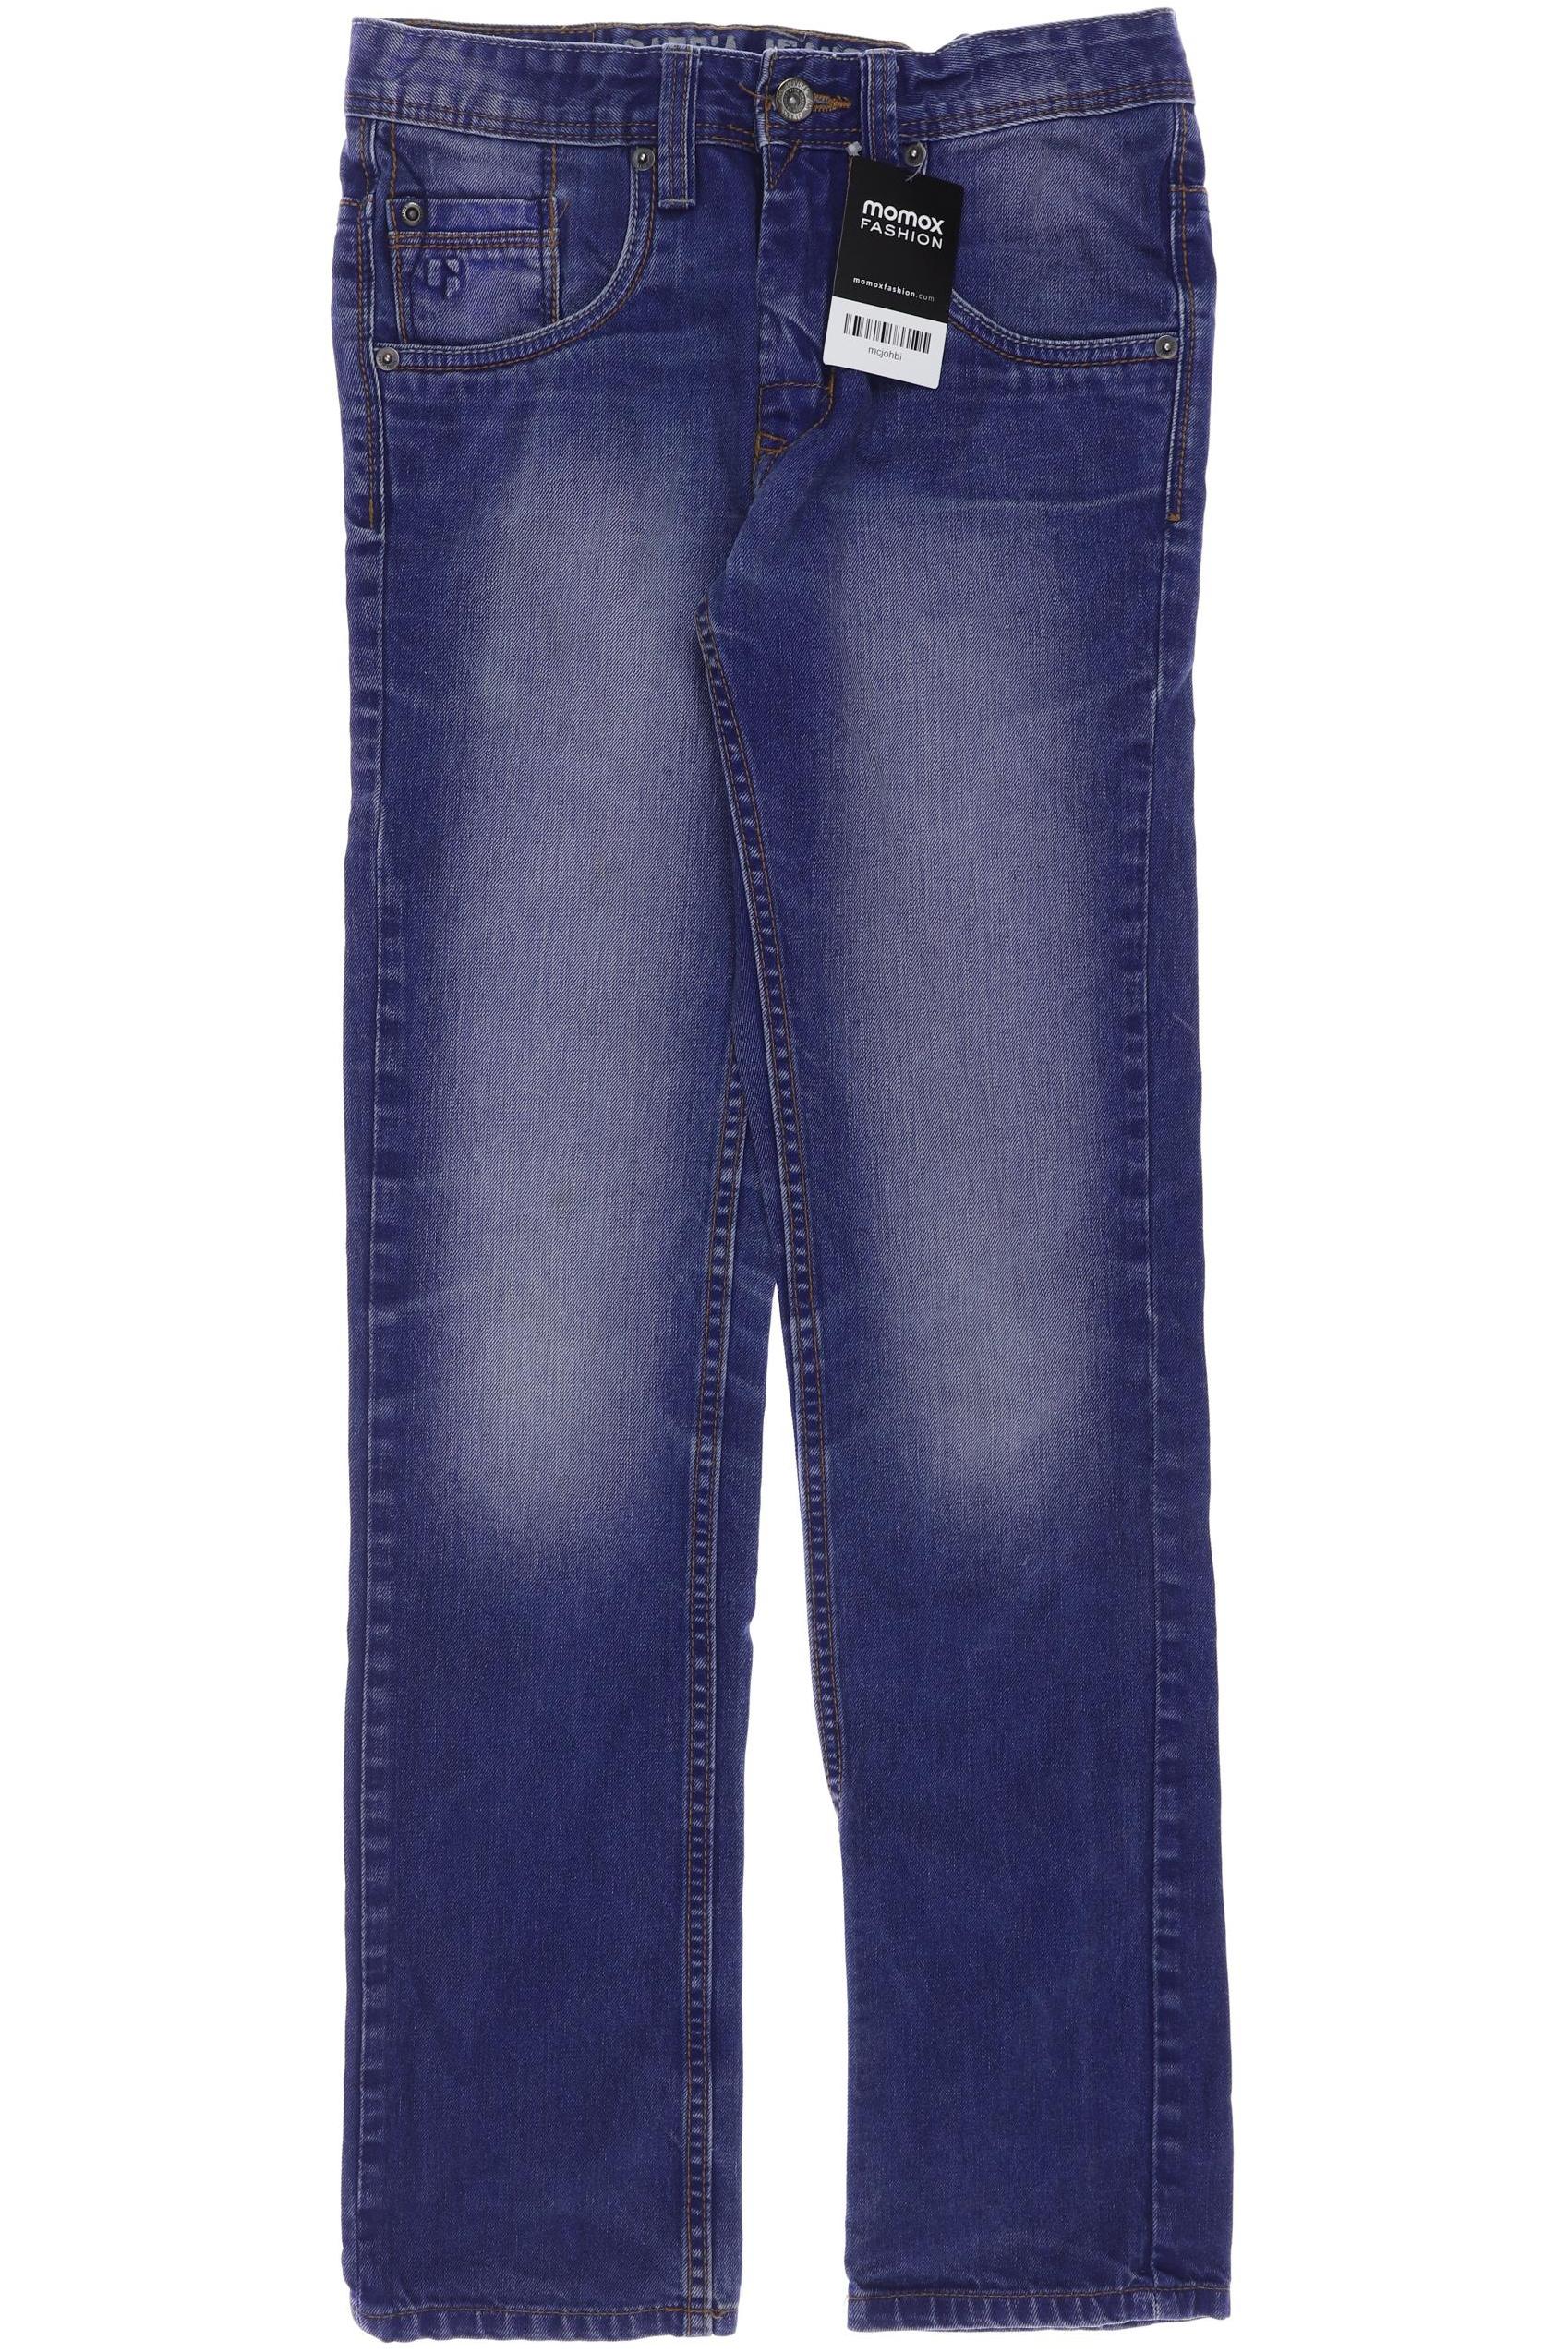 Garcia Damen Jeans, blau, Gr. 158 von GARCIA